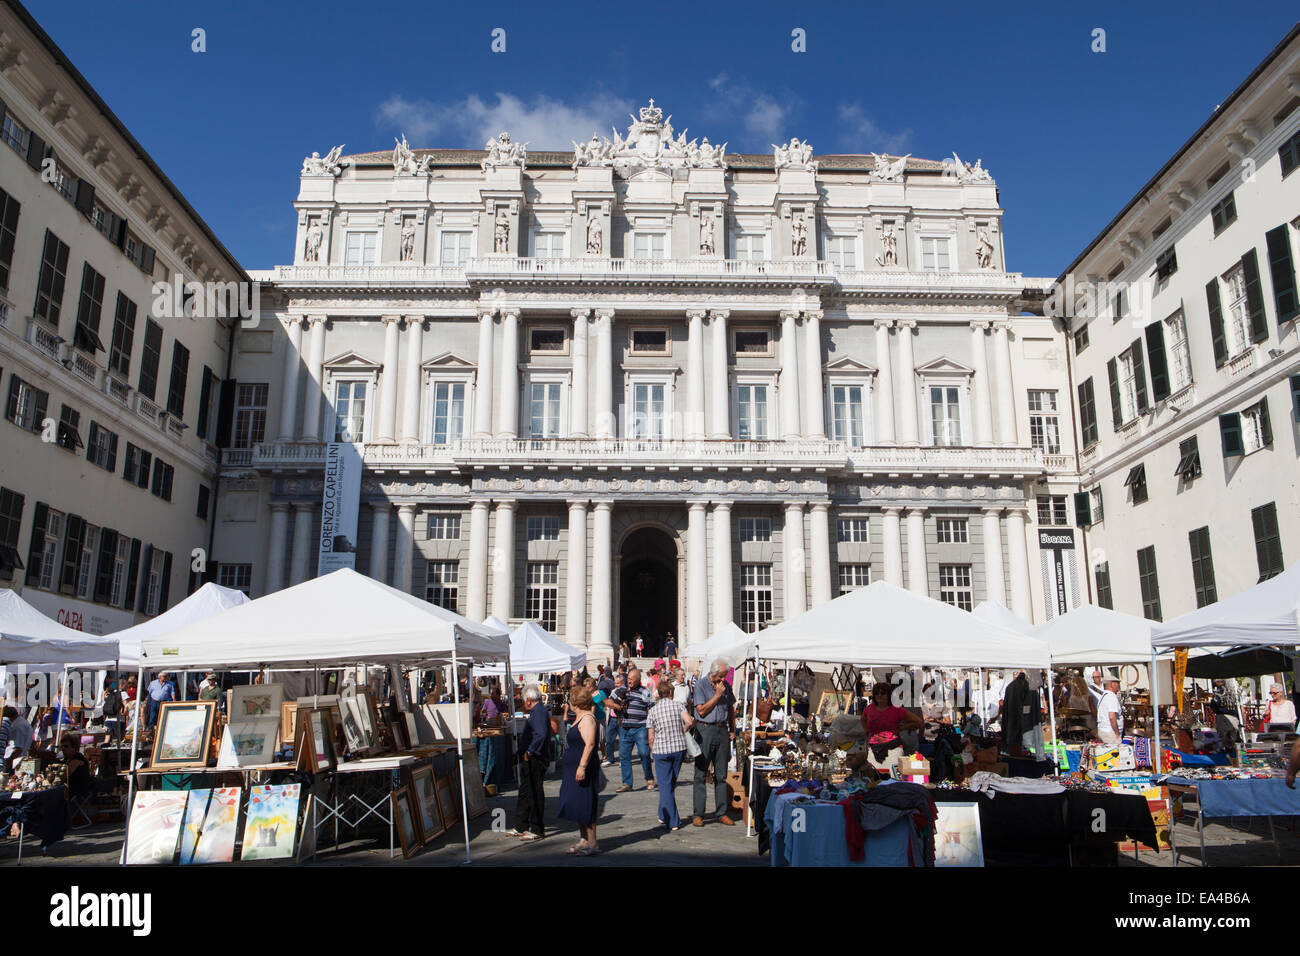 Market day at Palazzo Ducale, Genoa, Liguria, Italy. Stock Photo